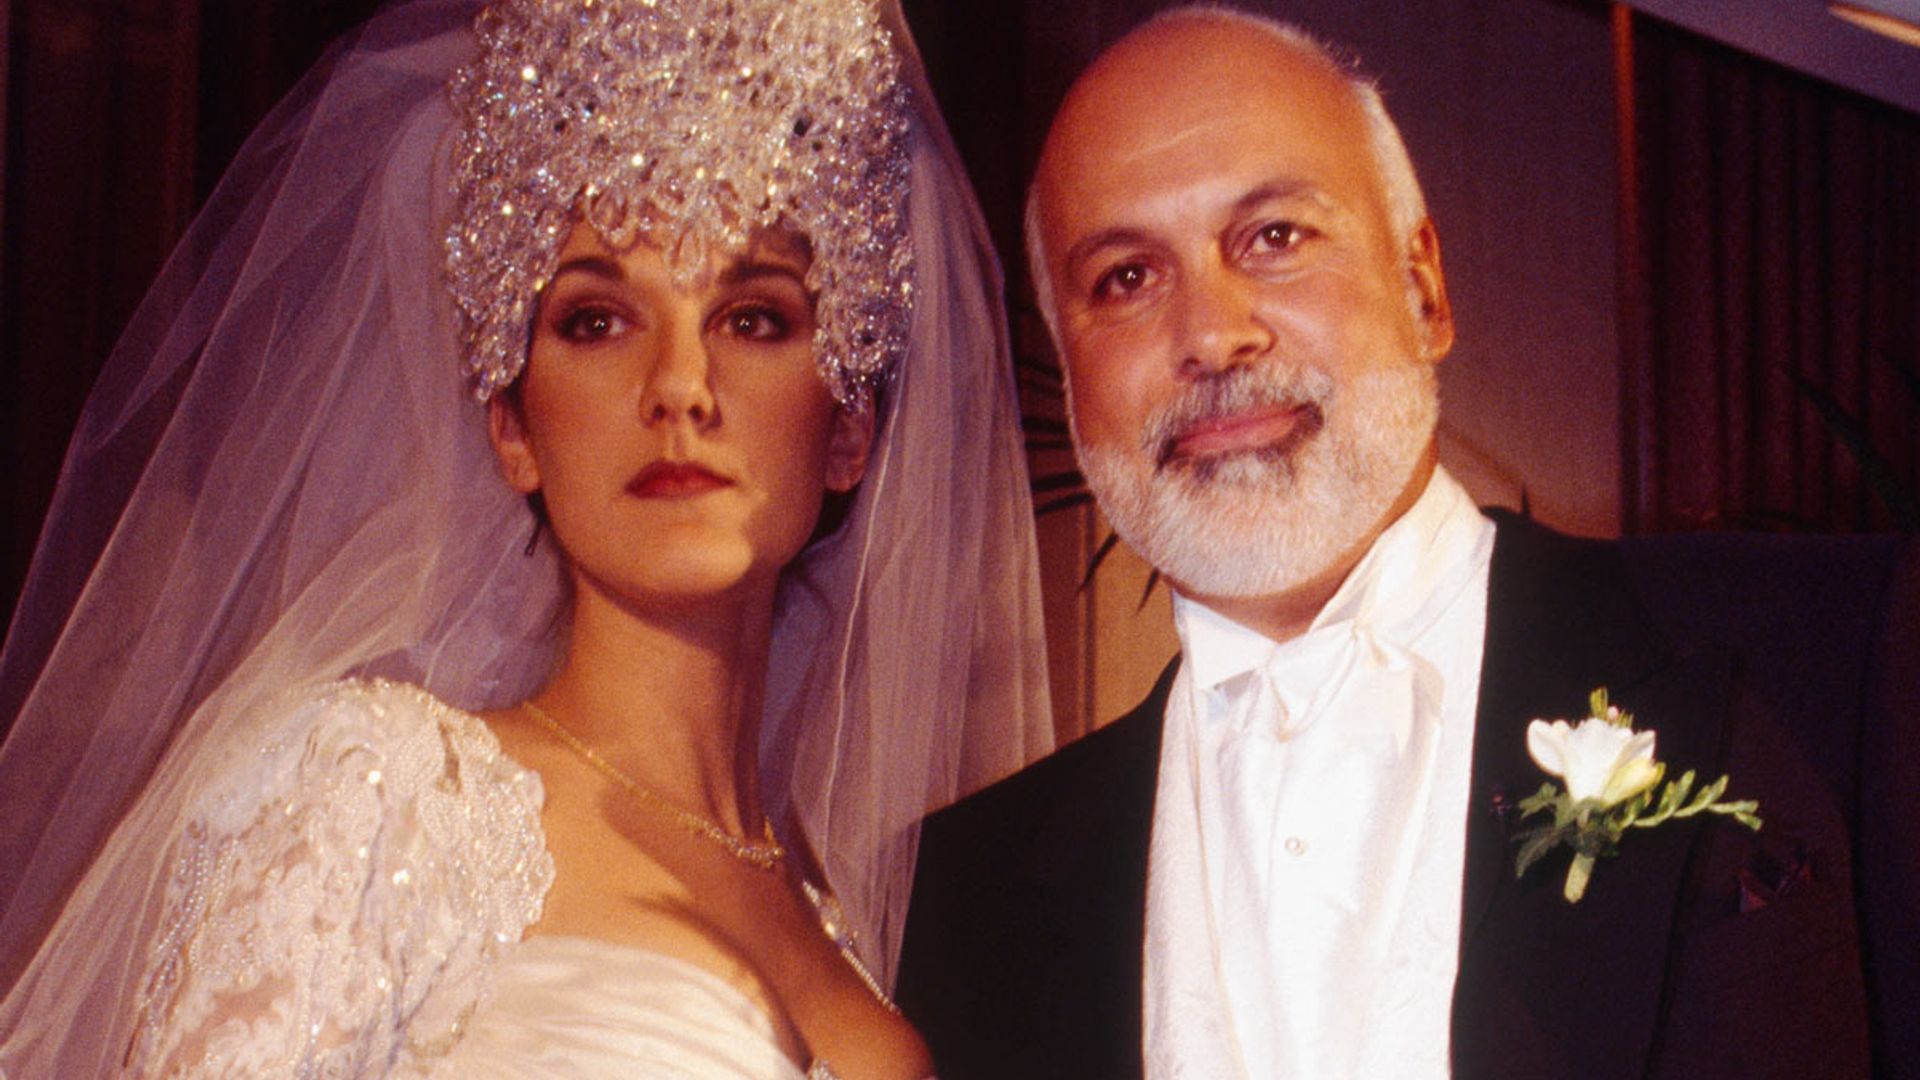 Celine Dion's crystalstudded wedding dress took 1000 hours to make